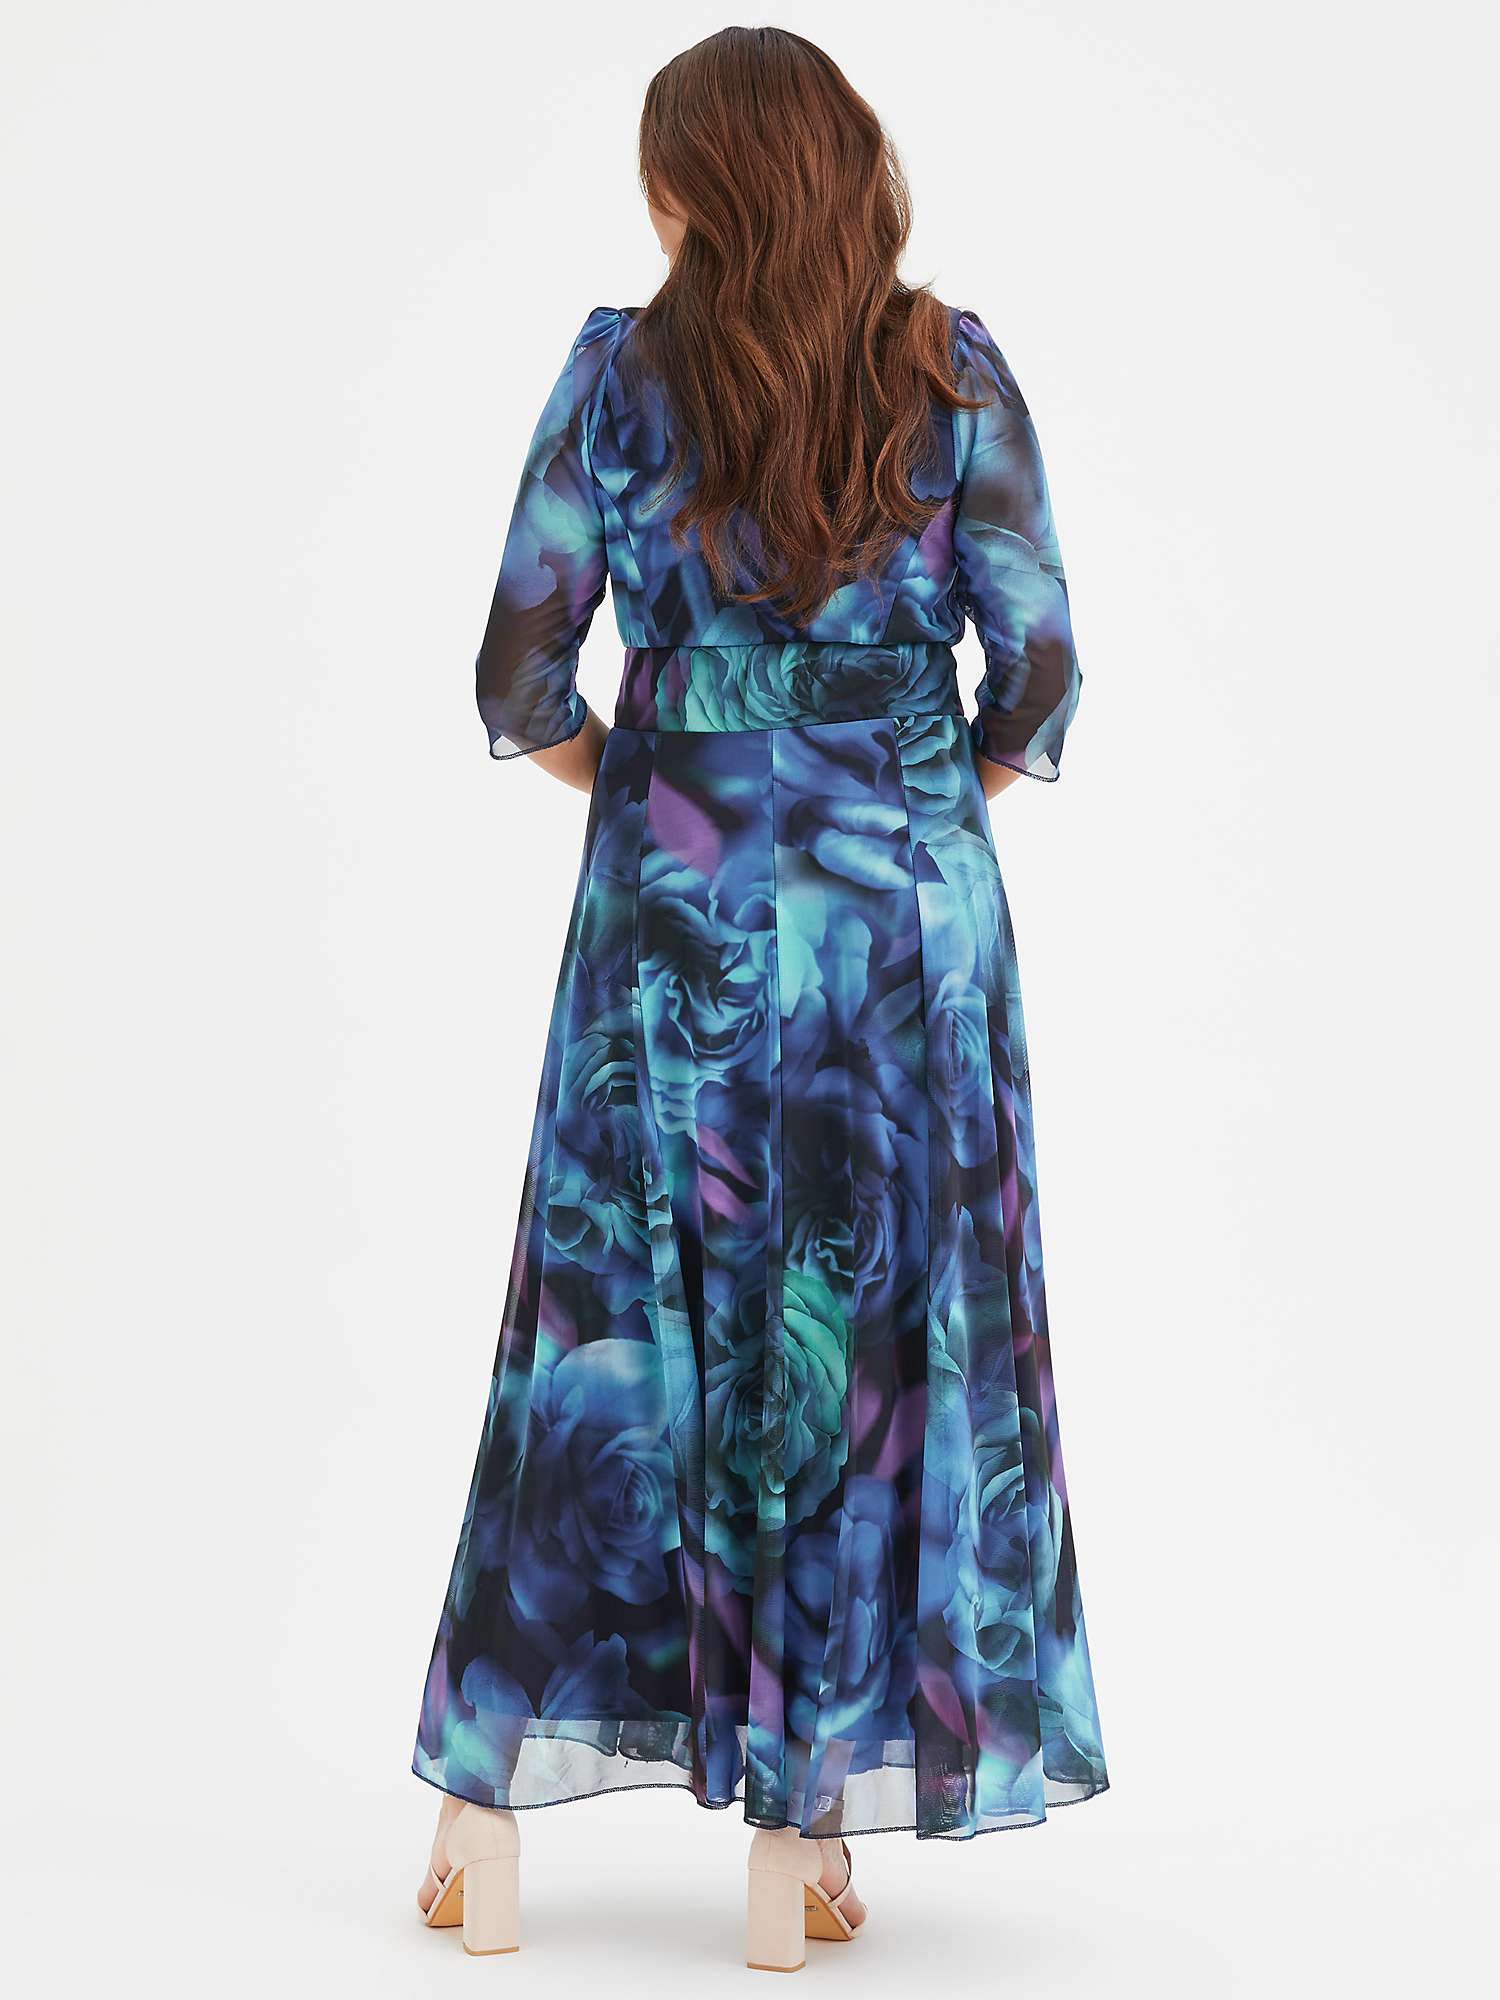 Buy Scarlett & Jo Elizabeth Floral Wrap Neck Maxi Dress, Teal Online at johnlewis.com